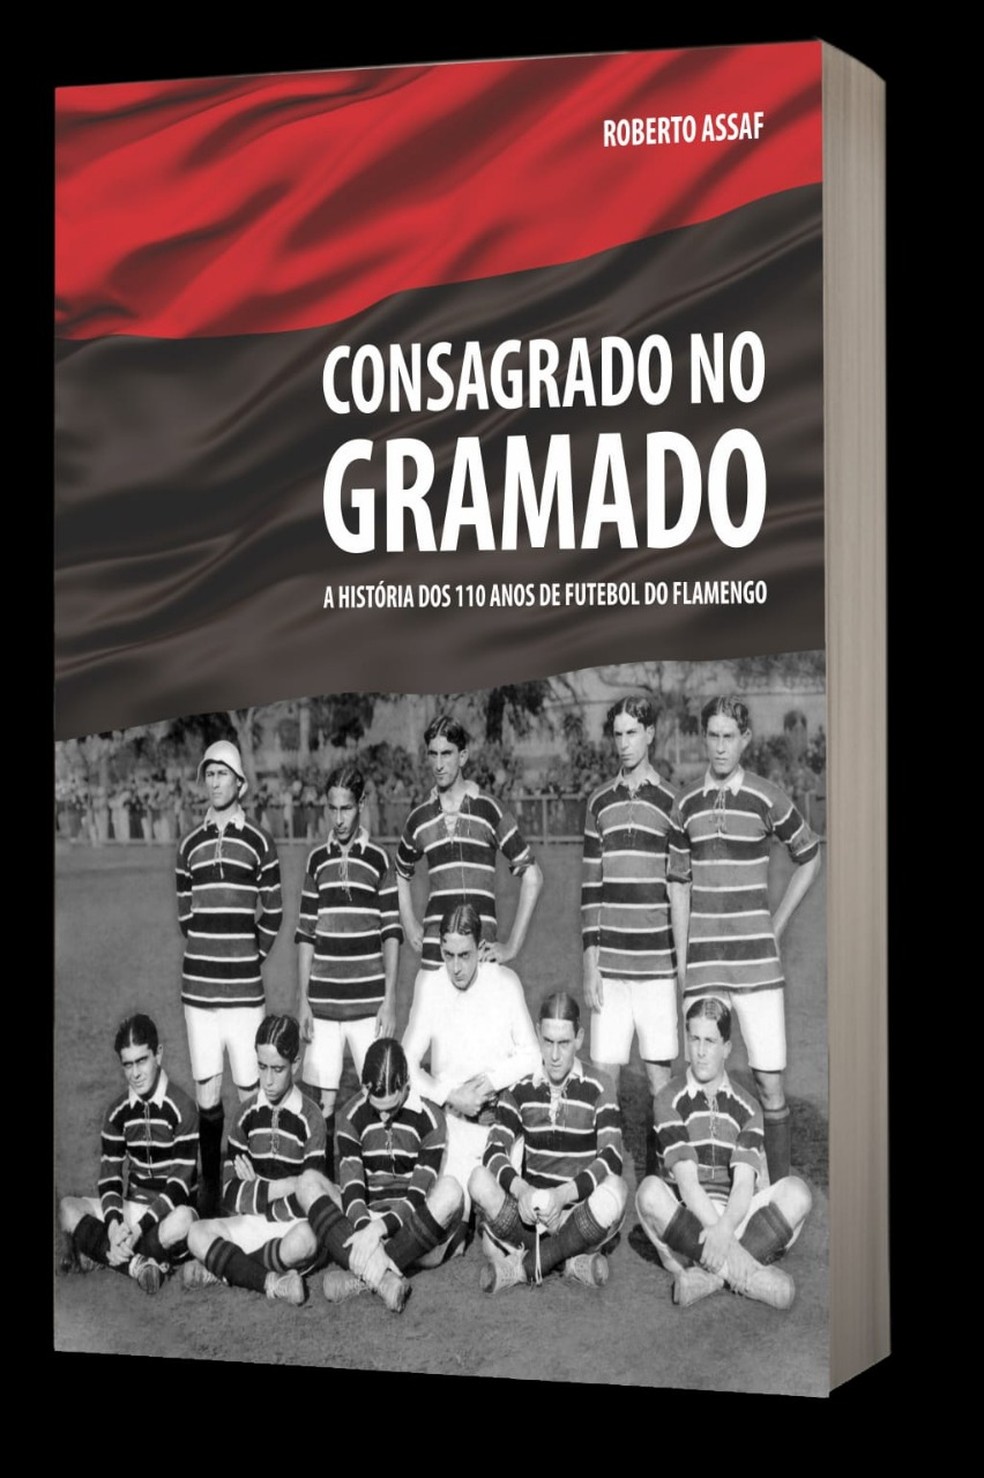 "Consagrado no gramado", sobre os 110 anos do futebol do Flamengo, é obra assinada por Roberto Assaf — Foto: Divulgação